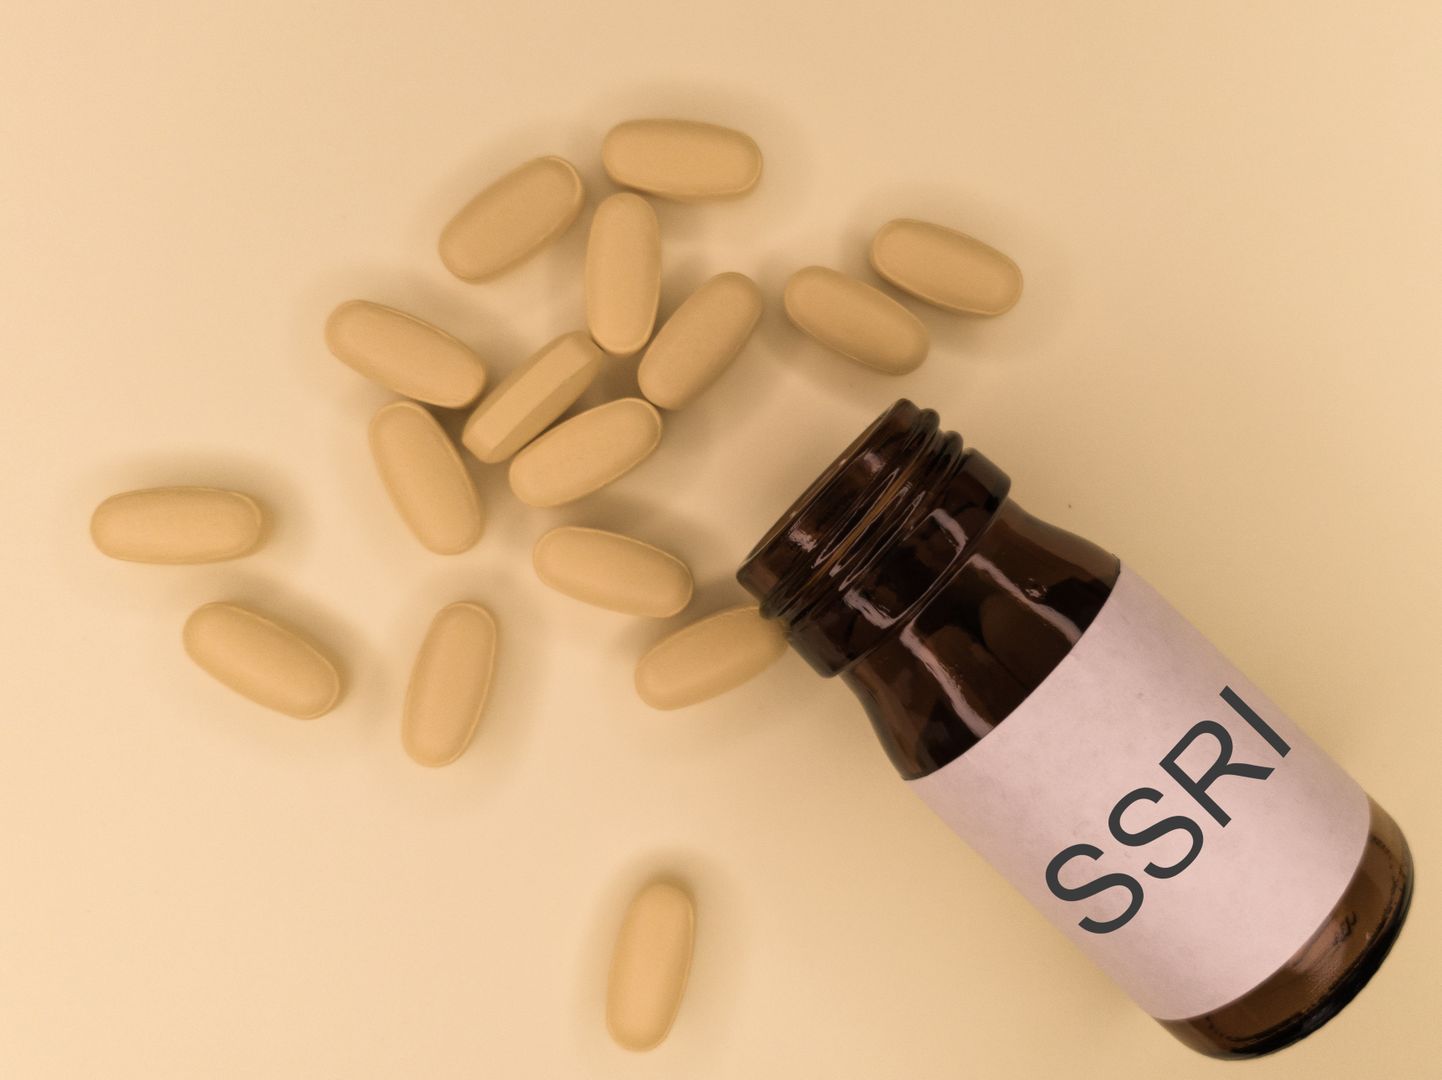 SSRI (selektiivsed serotoniini tagasihaarde inhibiitorid) ravimid, mida kasutatakse antidepressantidena suurte depressiivsete häirete, ärevushäirete ja muude psühholoogiliste seisundite (nt paanikahood) korral.